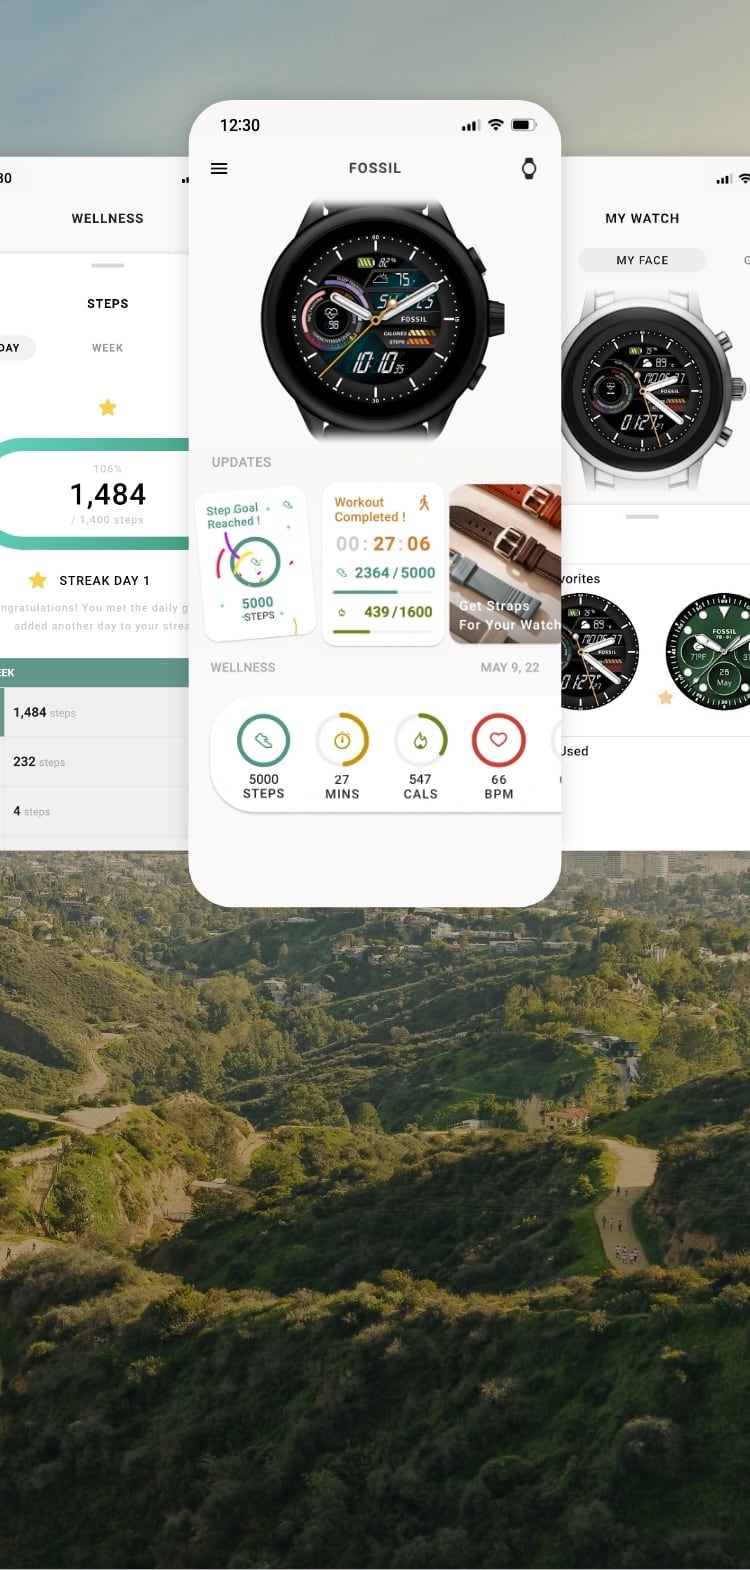 Tre schermi simulati di smartwatch mettono in evidenza le nuove funzionalità dell’app Fossil Smartwatches su uno sfondo scenografico.